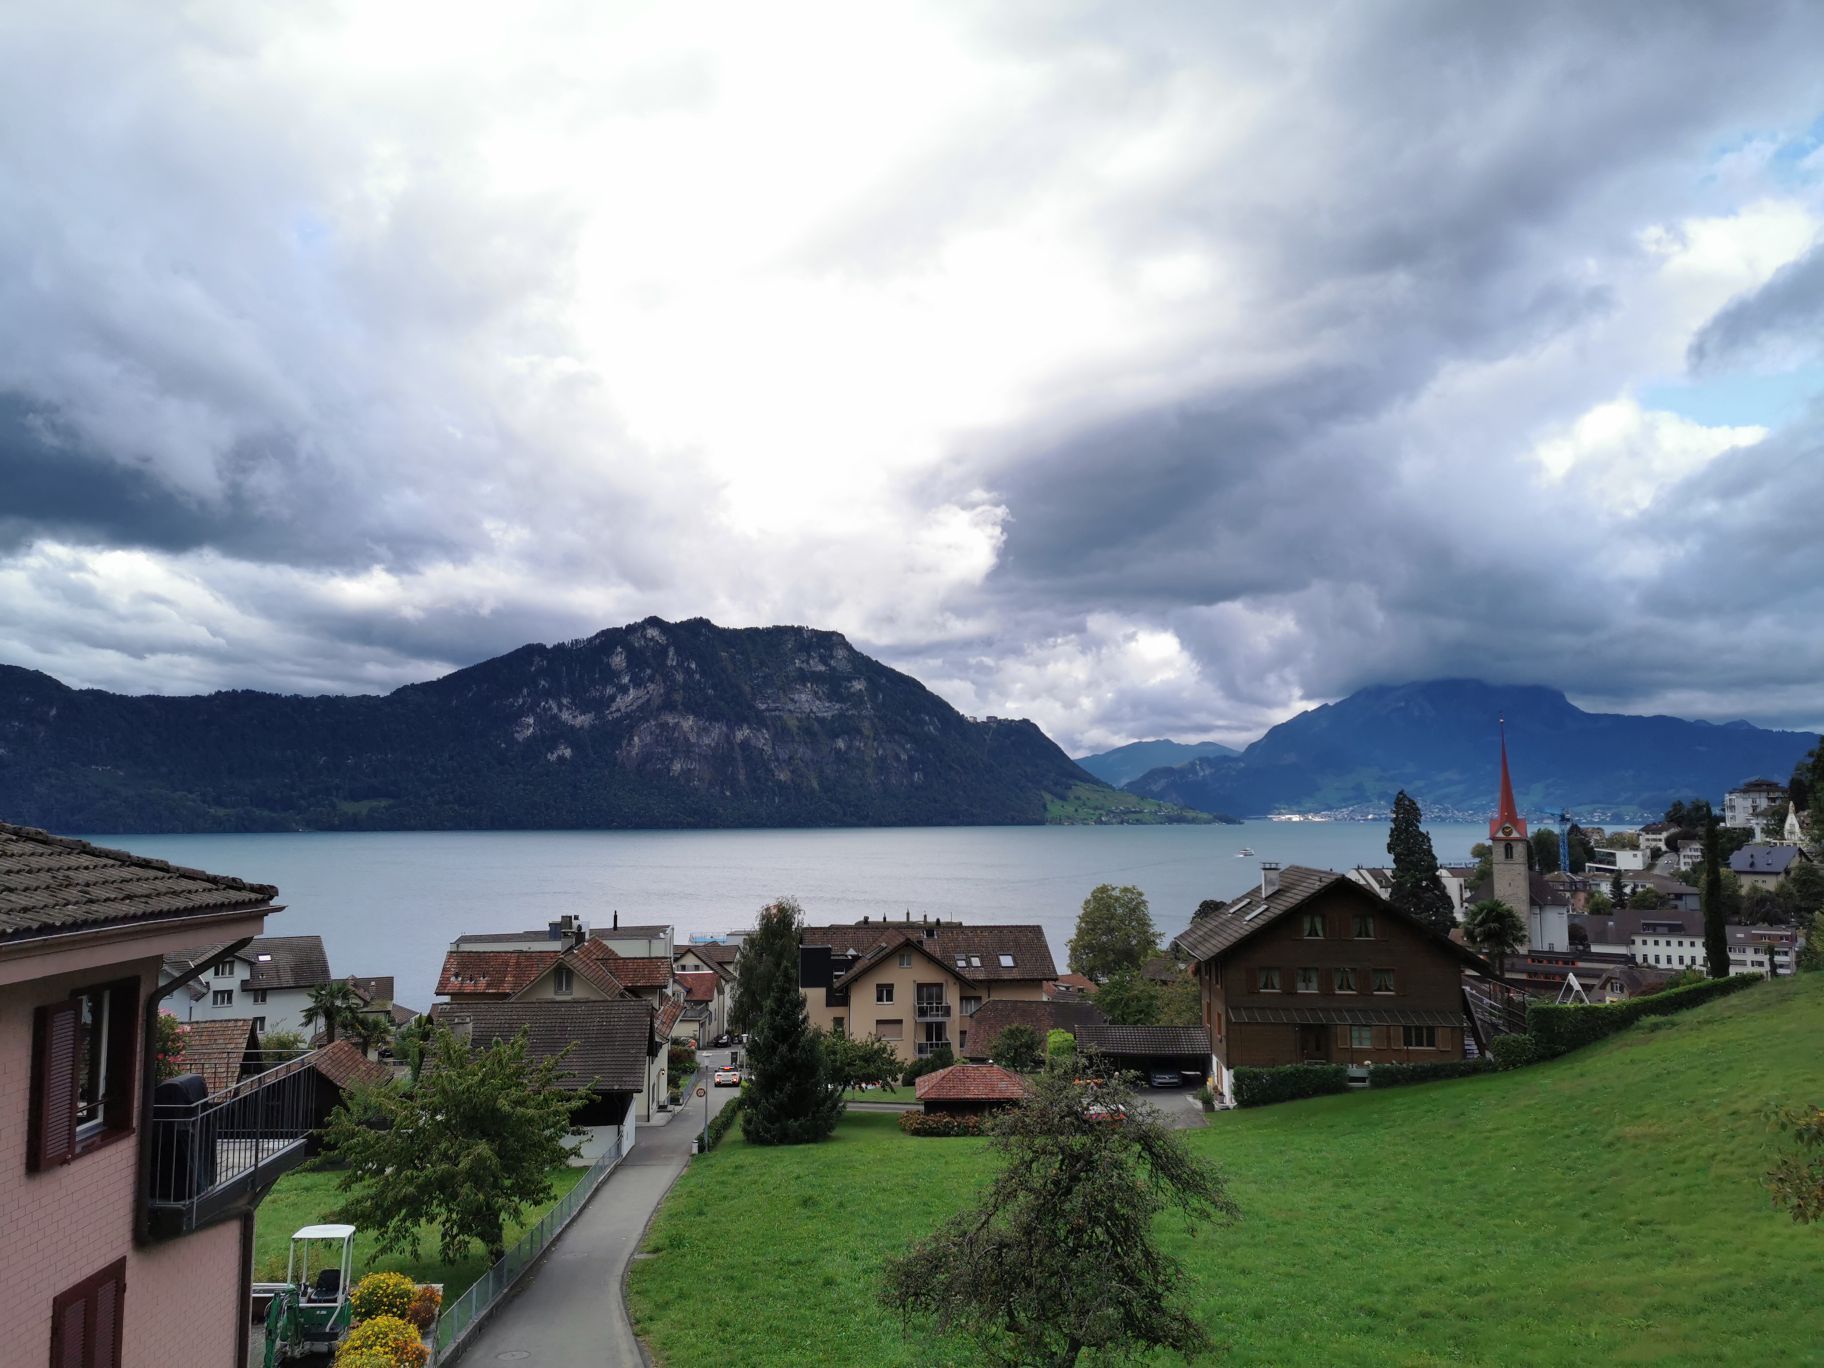 韦吉斯是瑞士瑞吉山脚下的一个美丽的小镇。一边是秀美的瑞吉山，一边是清澈的琉森湖。住在这里的人们热爱生